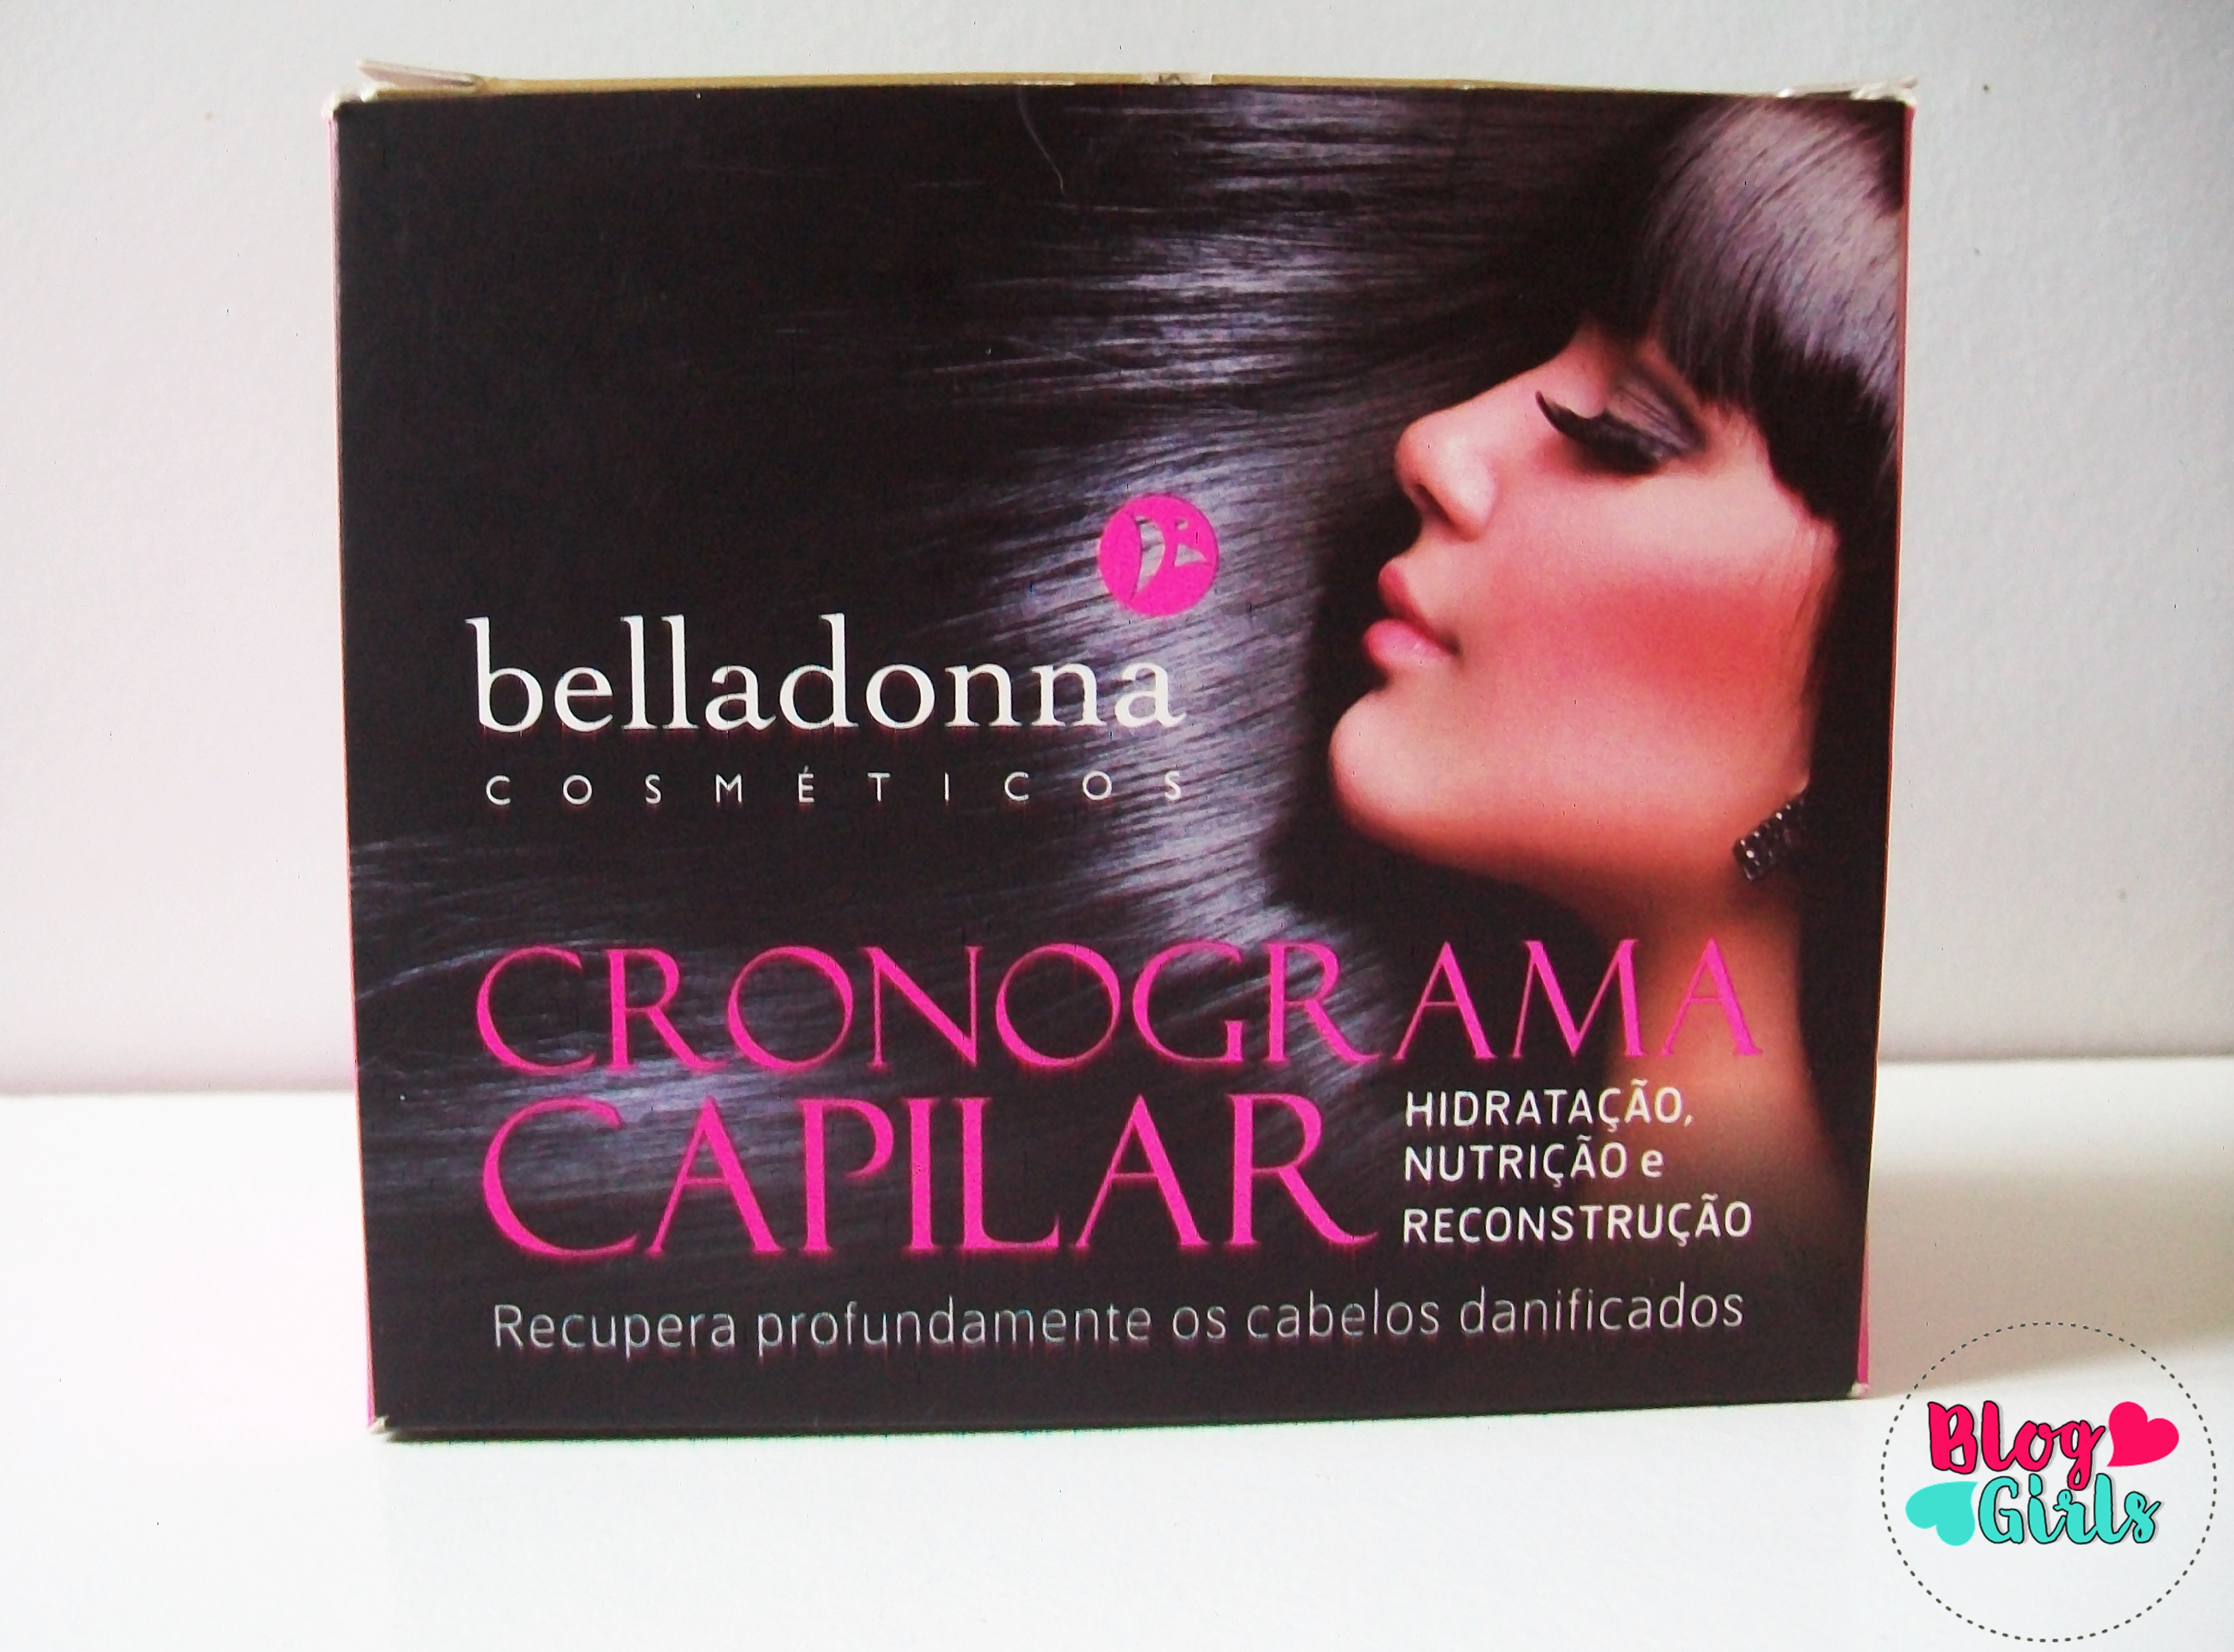 cronograma capilar bella hair belladonna cosmeticos debauer cosmeticos bloggirls (2).JPG